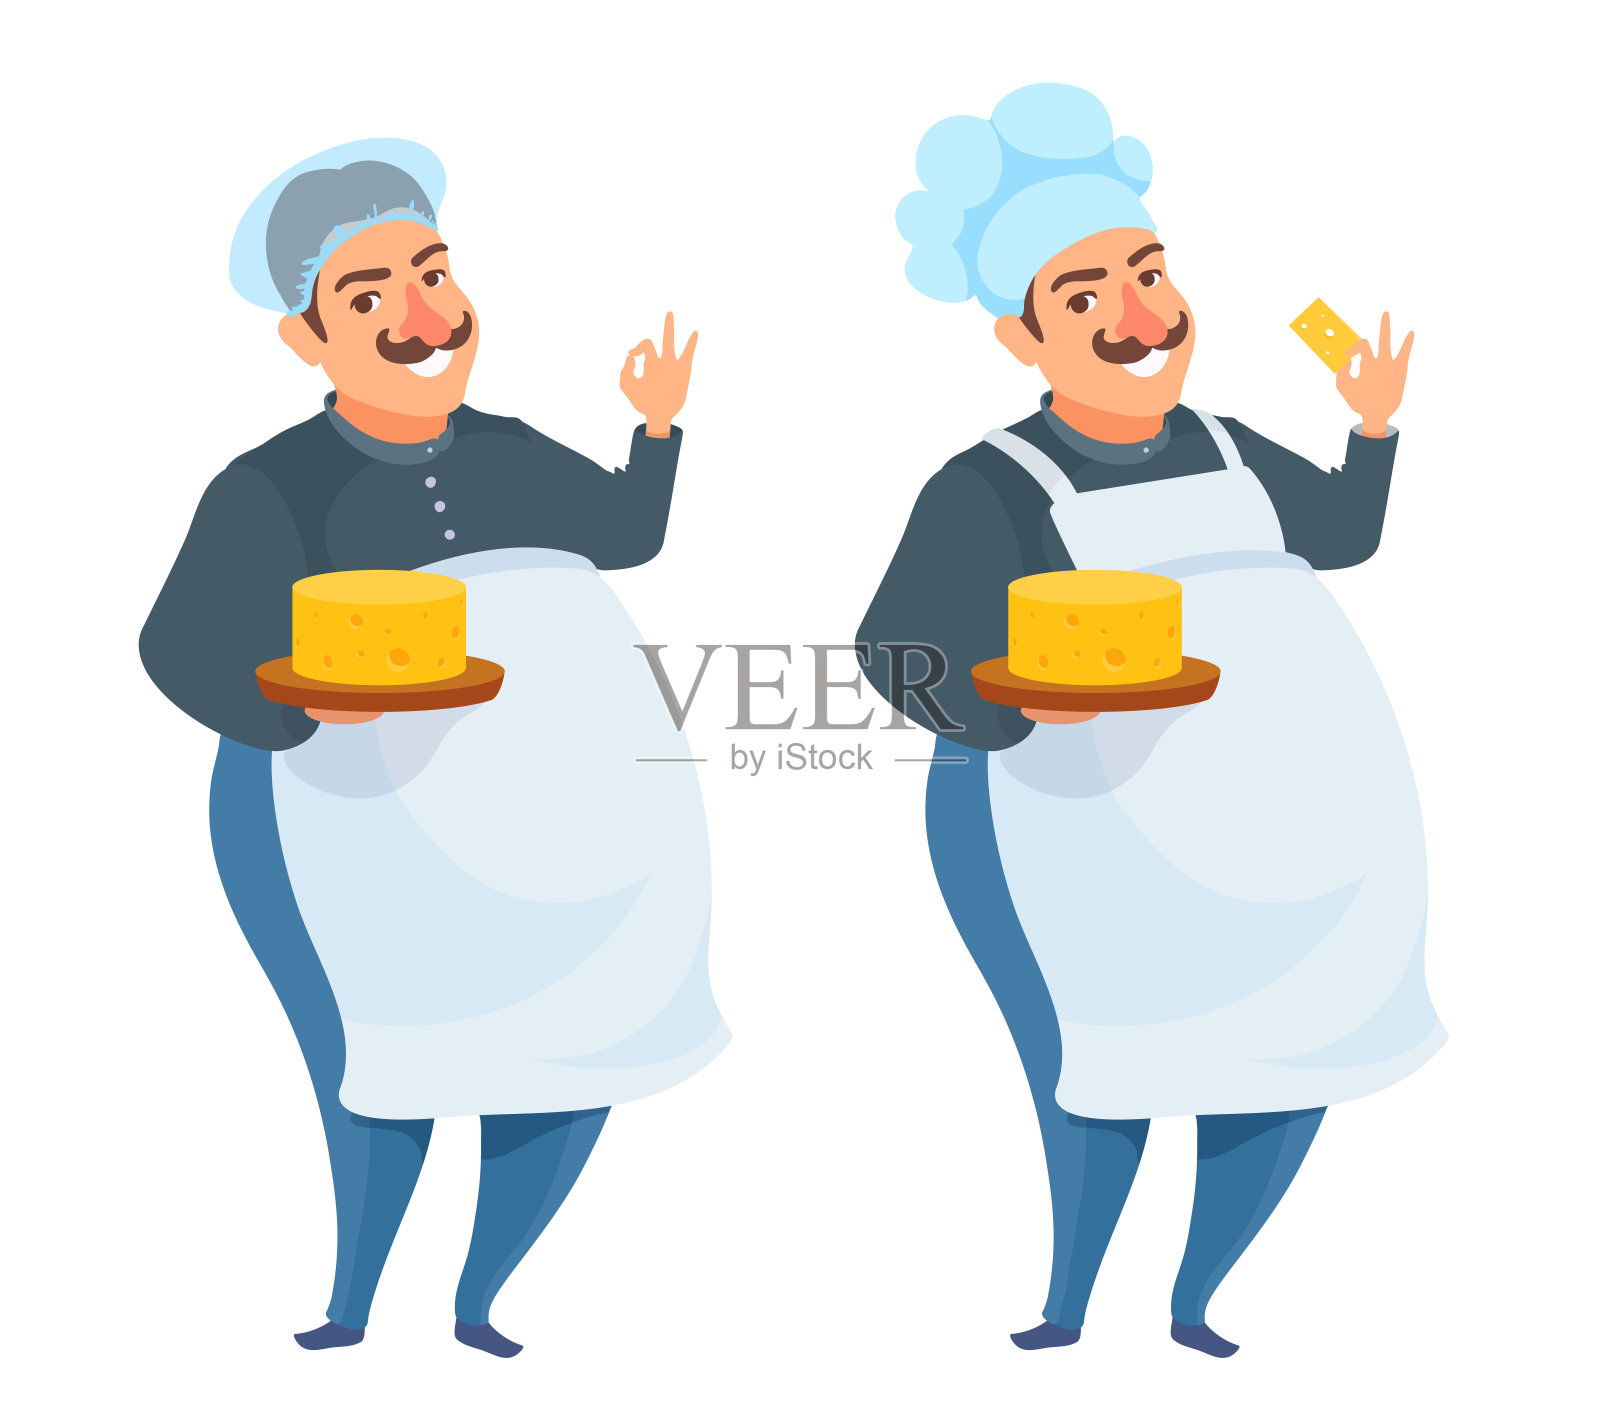 专业厨师用托盘上的奶酪块烹饪。用手做OK的手势，微笑。插画图片素材